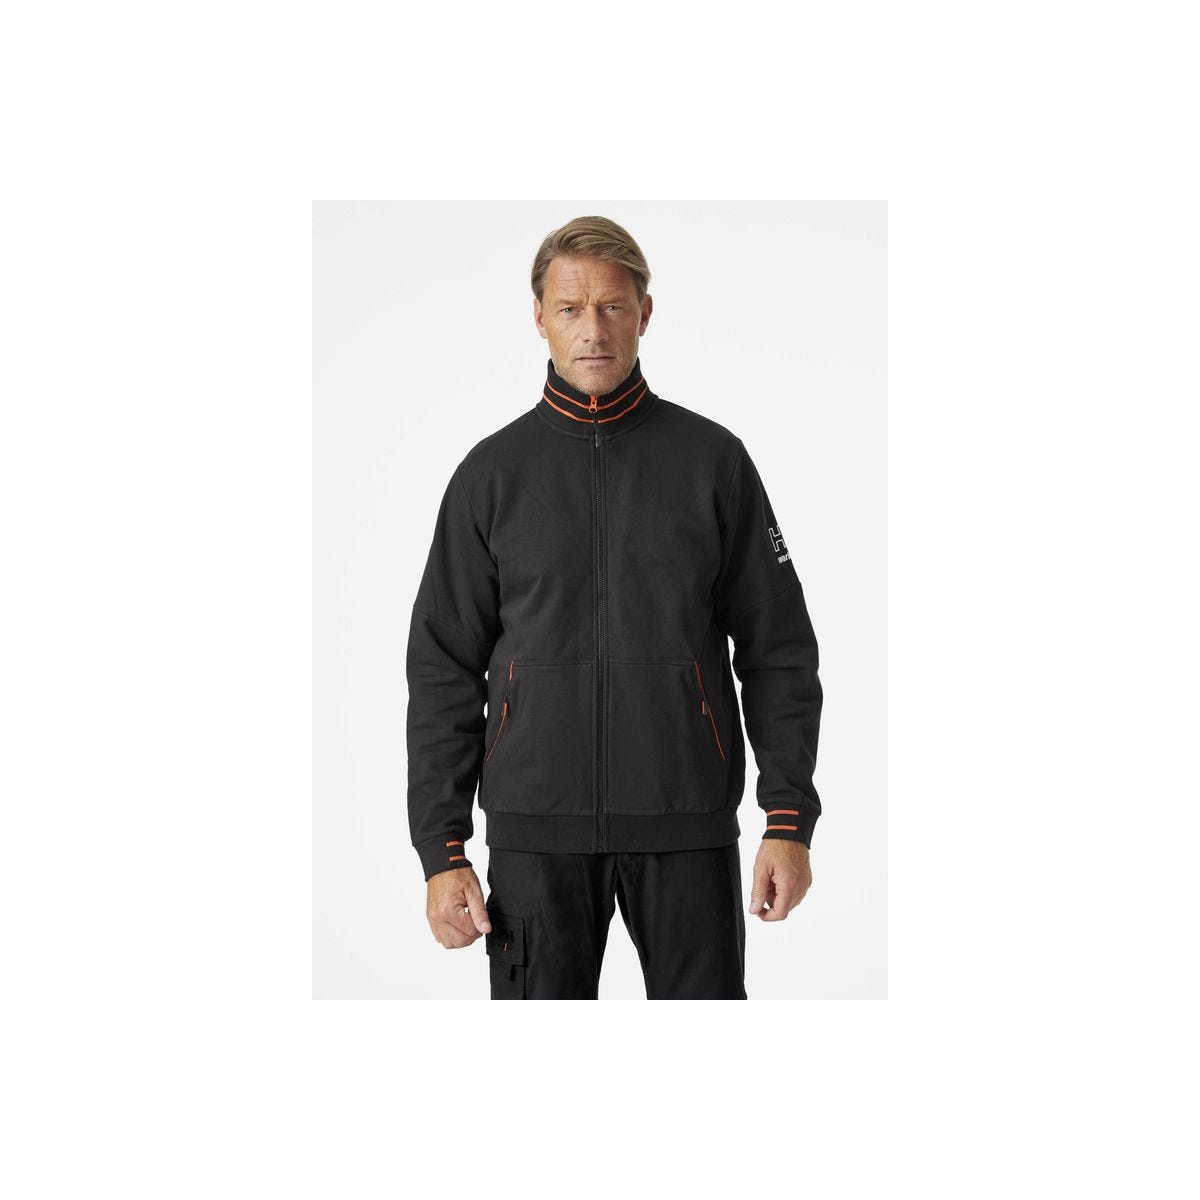 Sweat-shirt zippé noir kensington - HELLY HANSEN - Taille 3XL 0